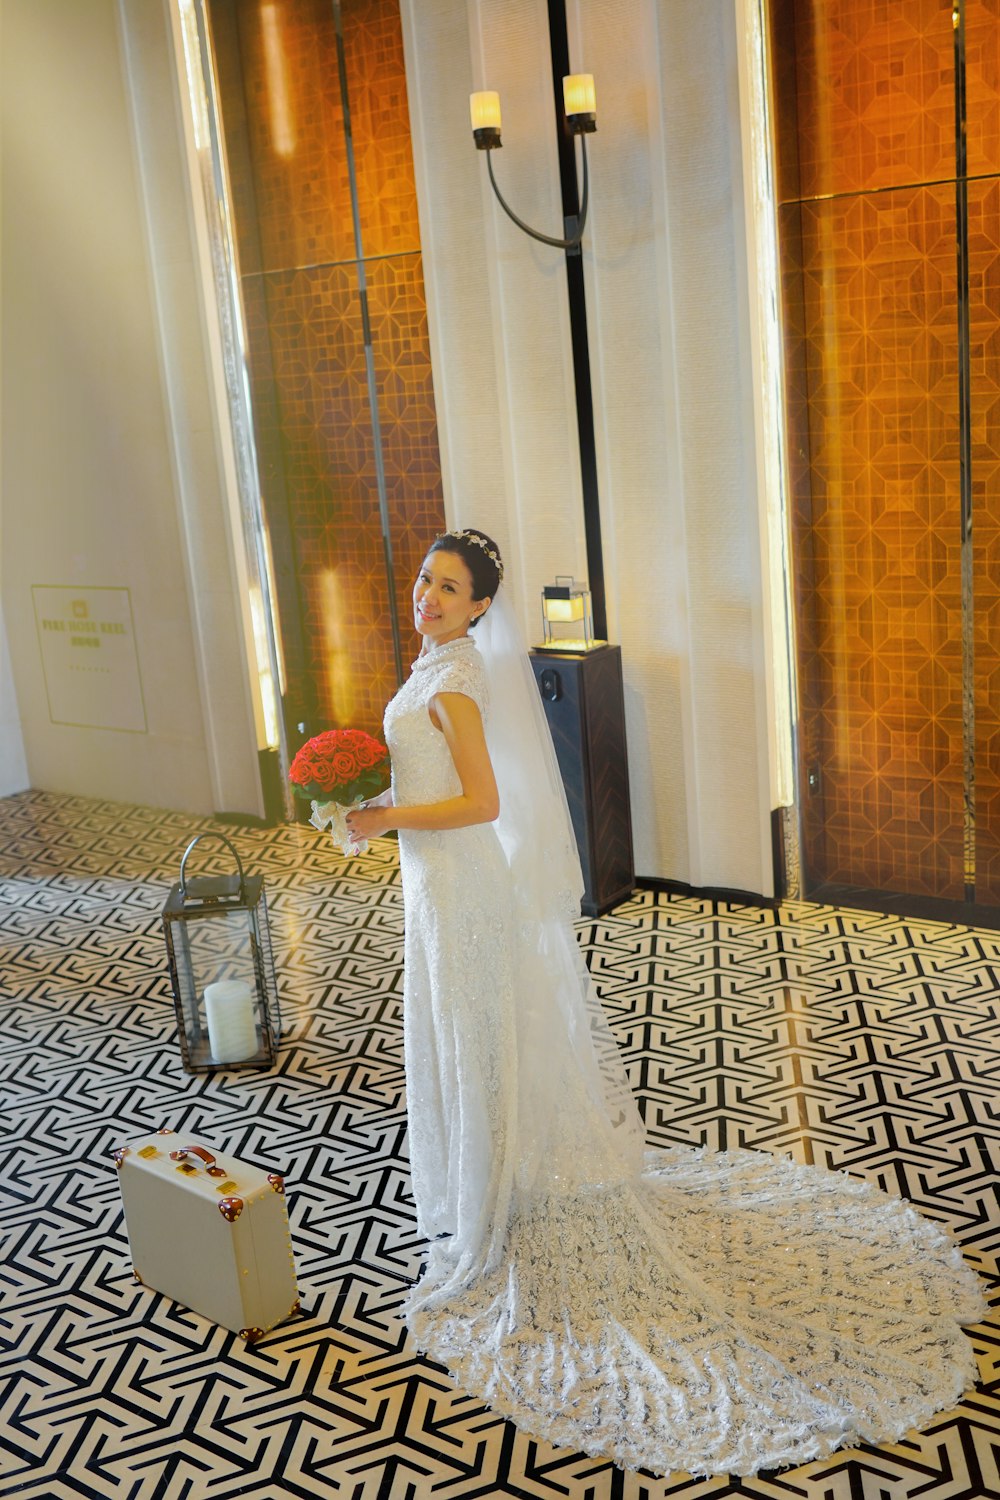 갈색과 흰색 카펫에 서 있는 하얀 웨딩 드레스를 입은 여자